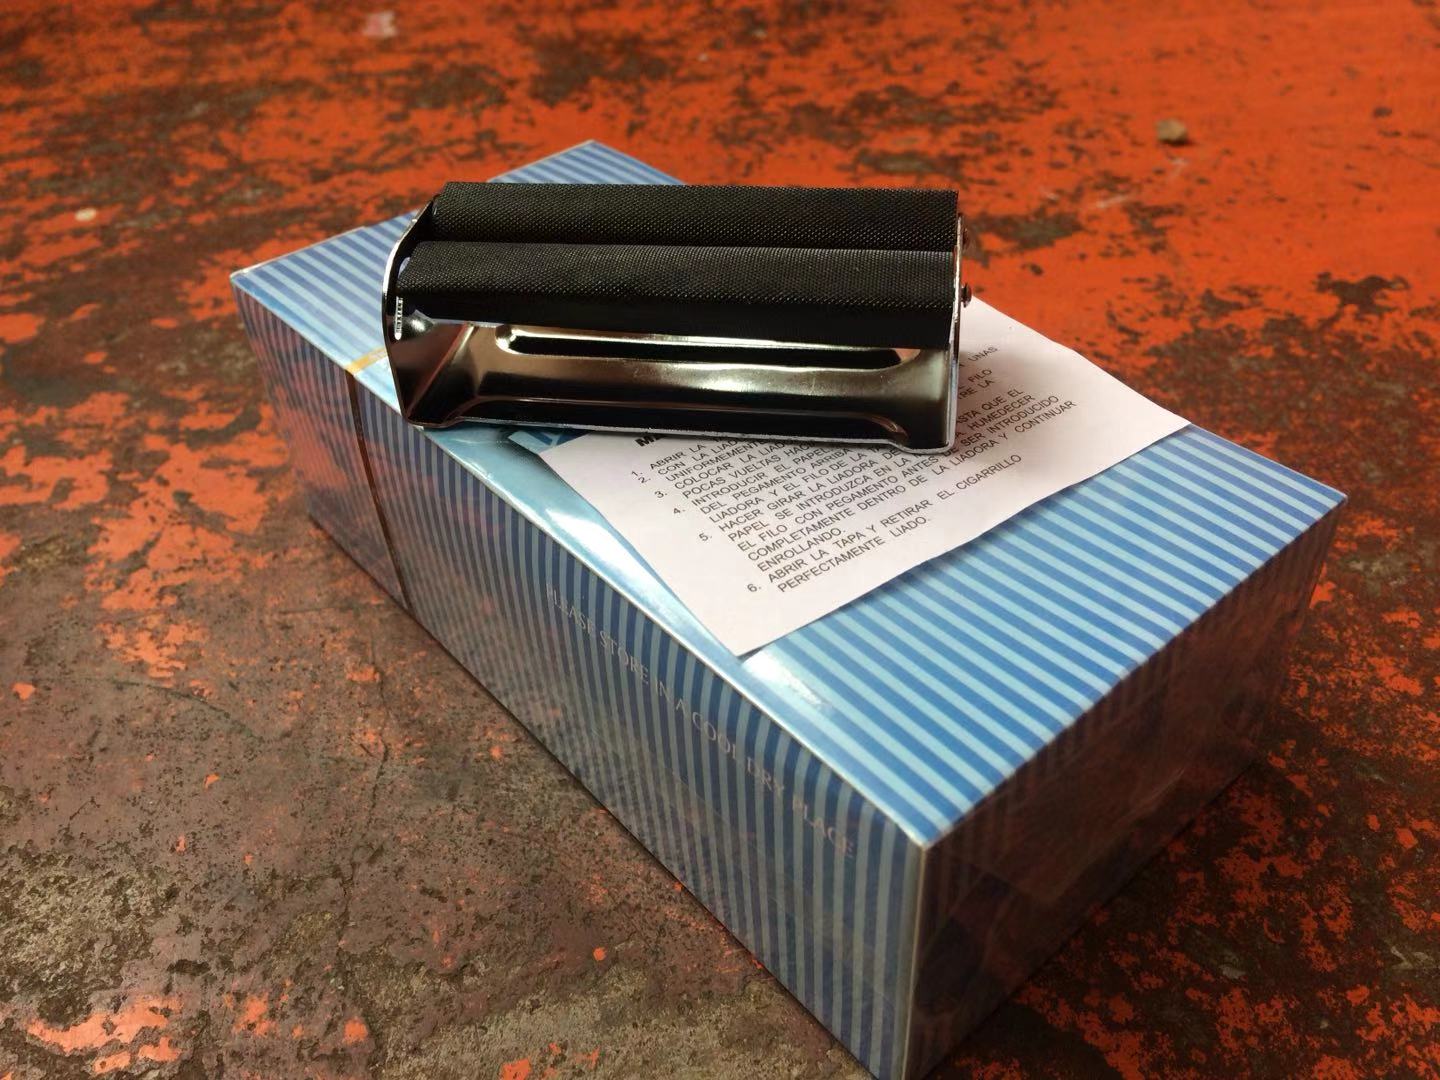 包邮70mm简式卷烟器便携自带胶卷烟纸2500张使用配合手动拉烟器